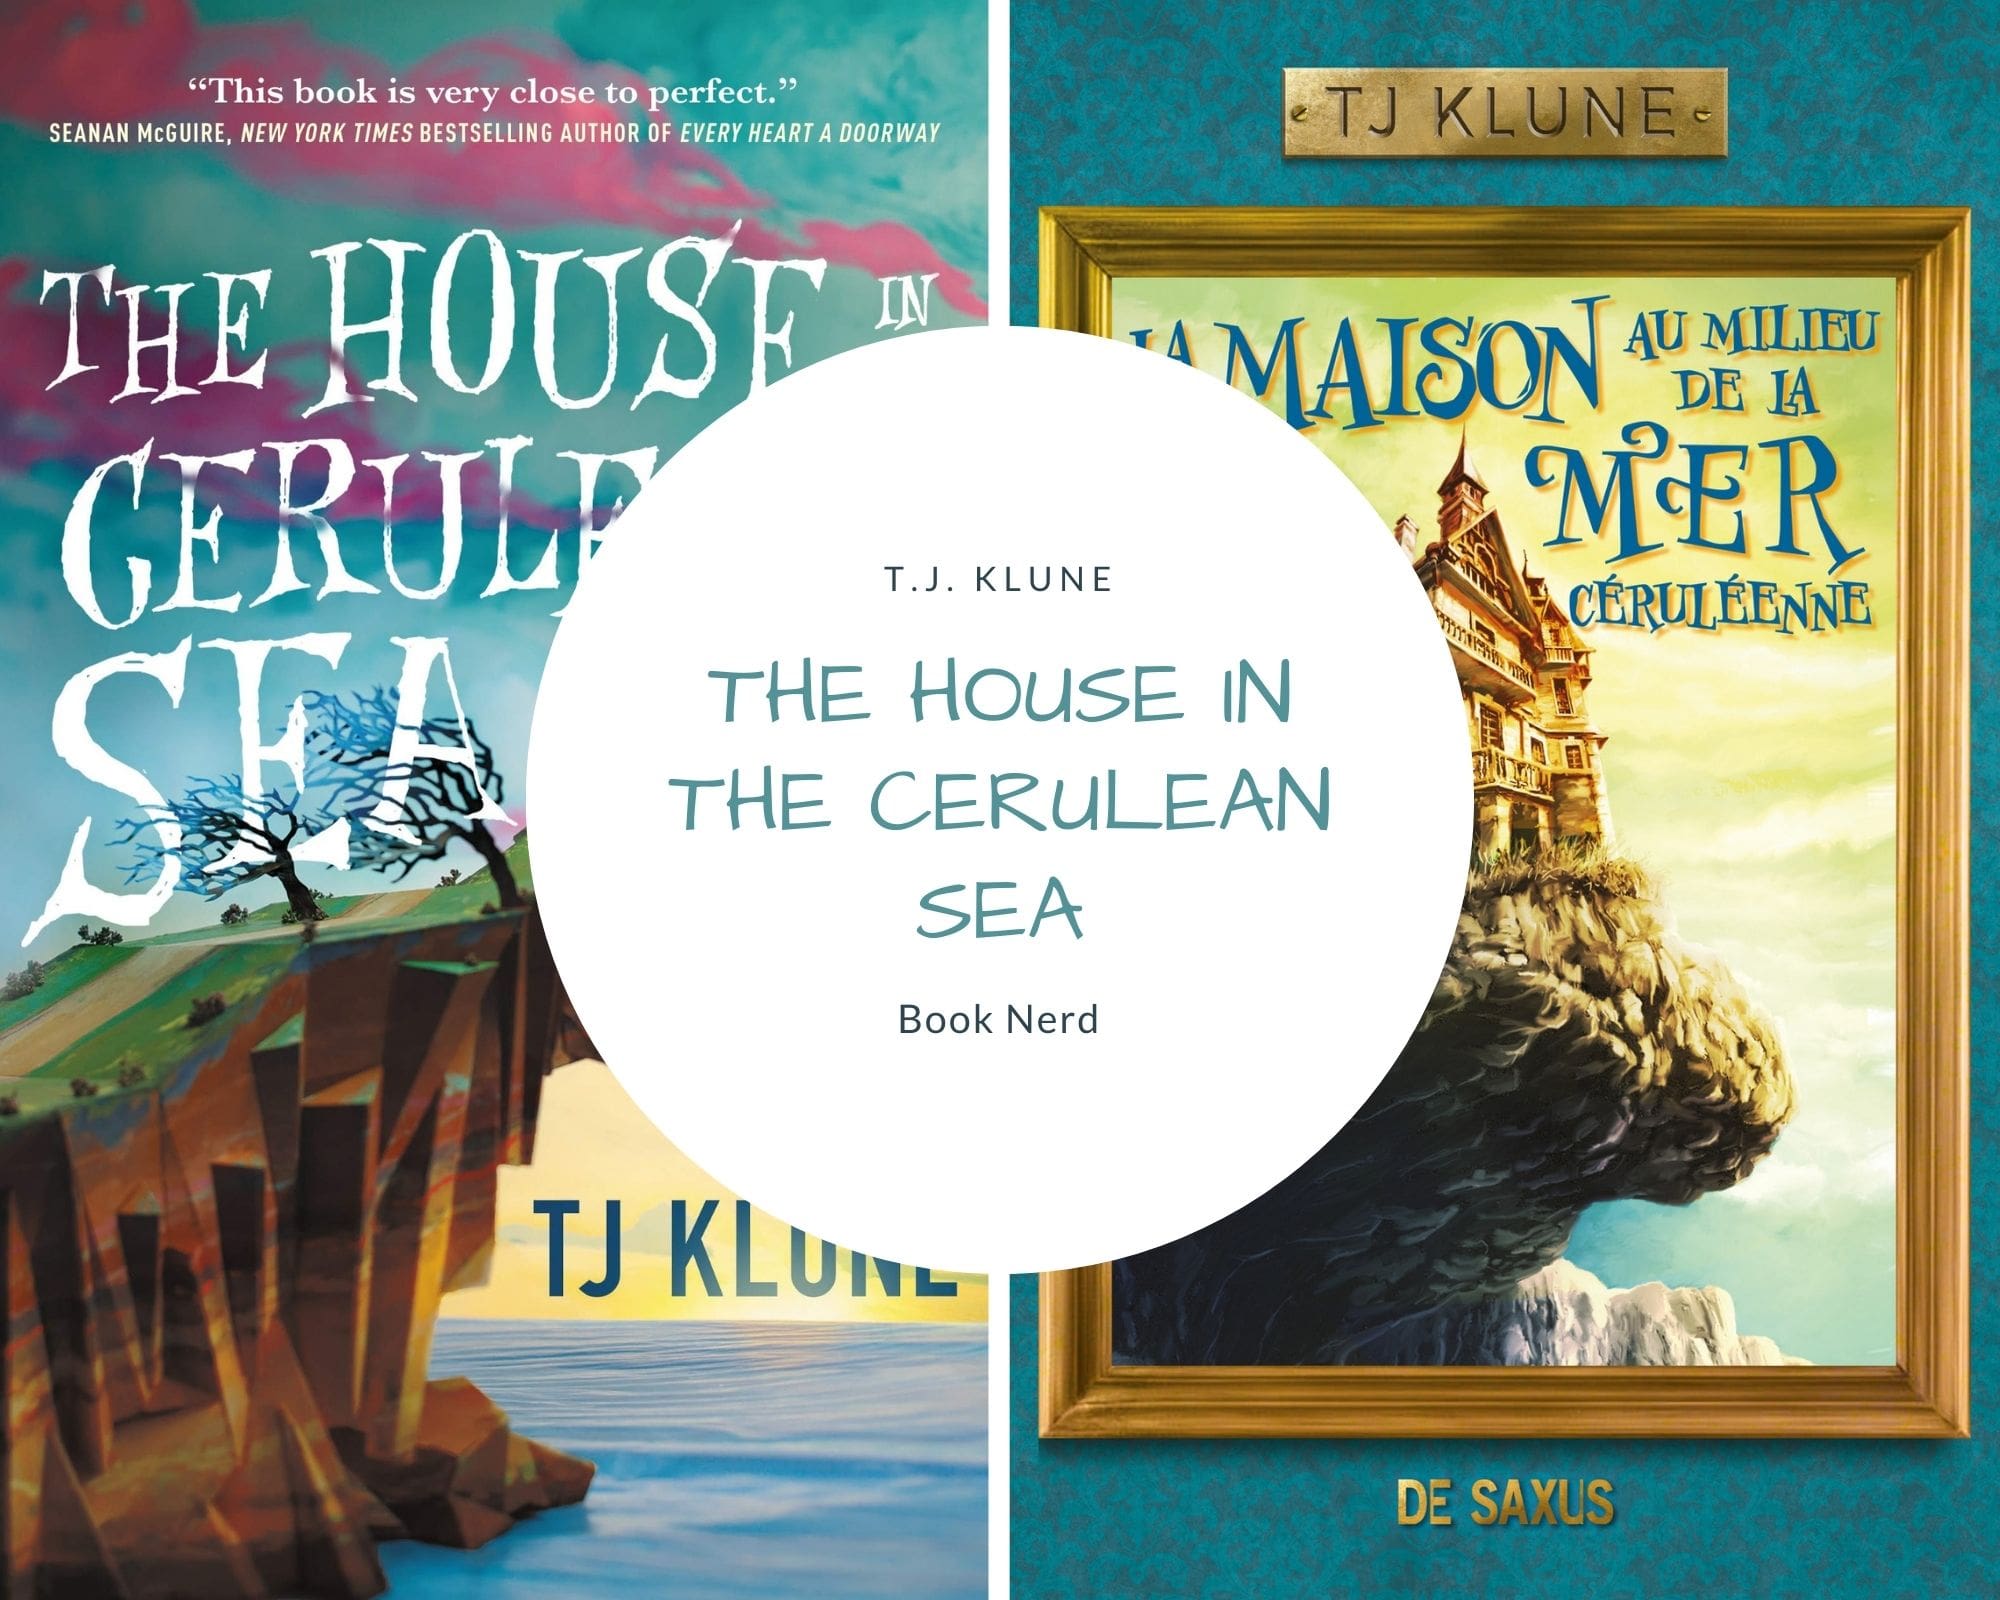 The House in the Cerulean Sea - La Maison au Milieu de la Mer Céruléenne - T.J. Klune - Résumé et Review